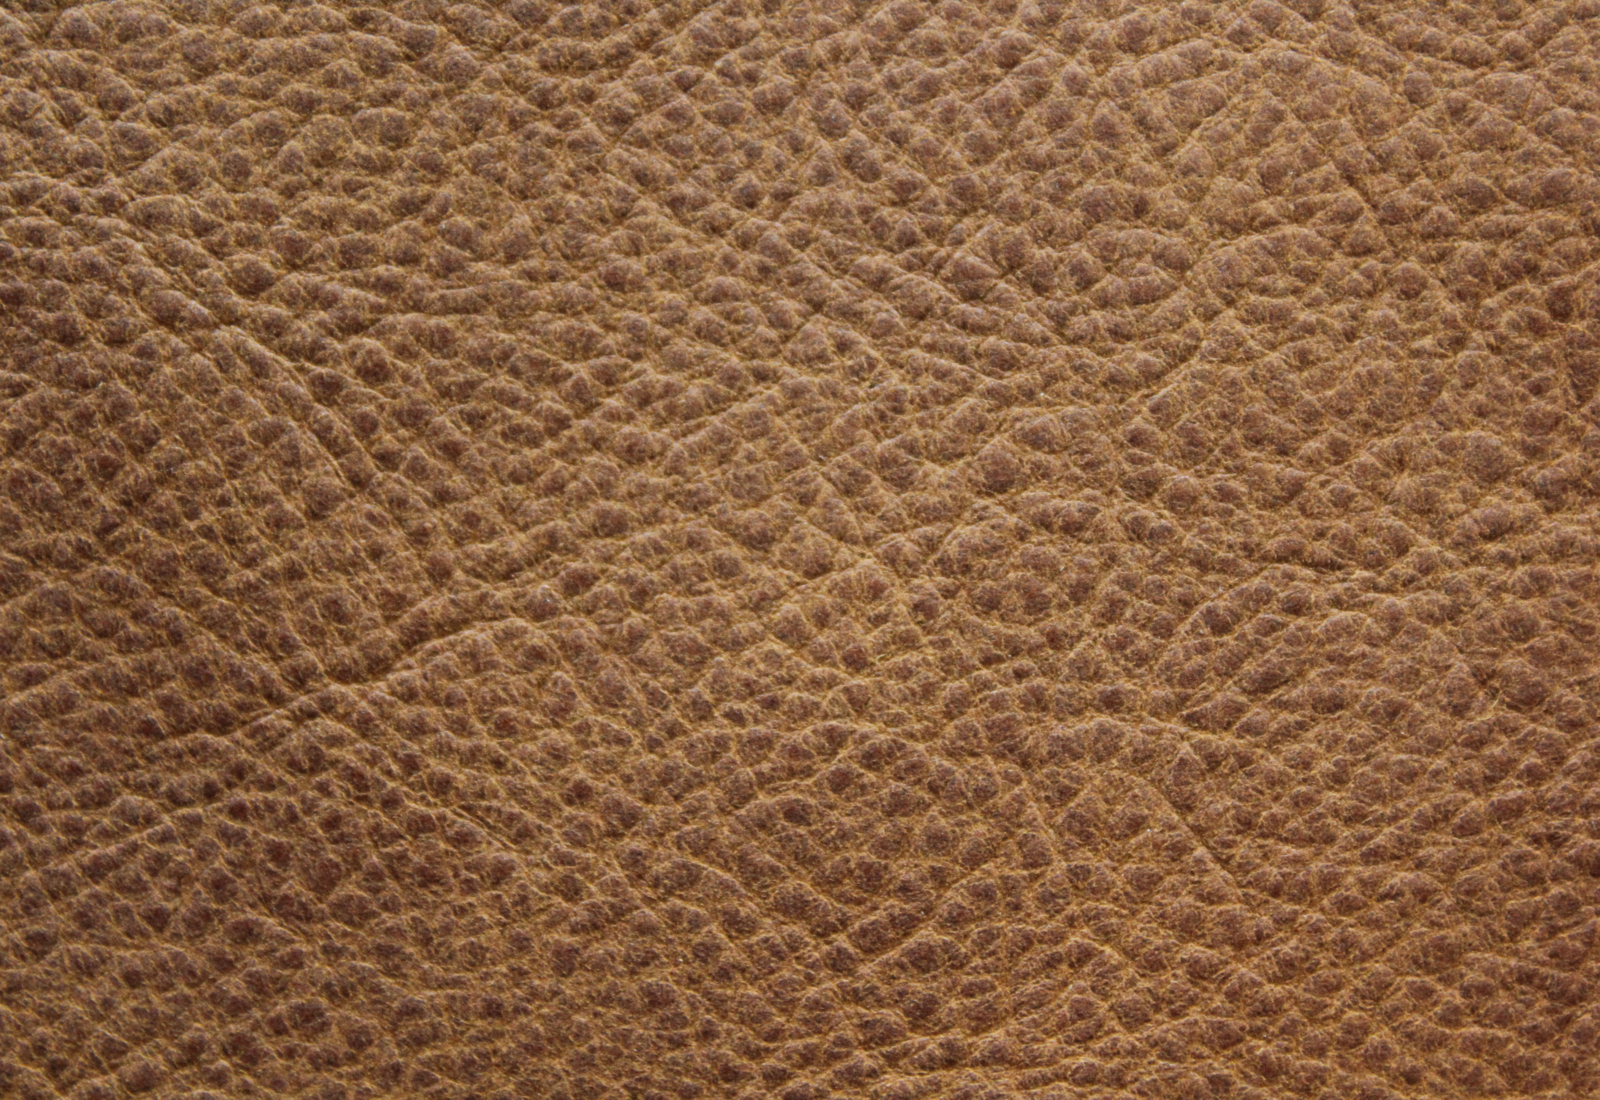 Dixieland Pecan Leather